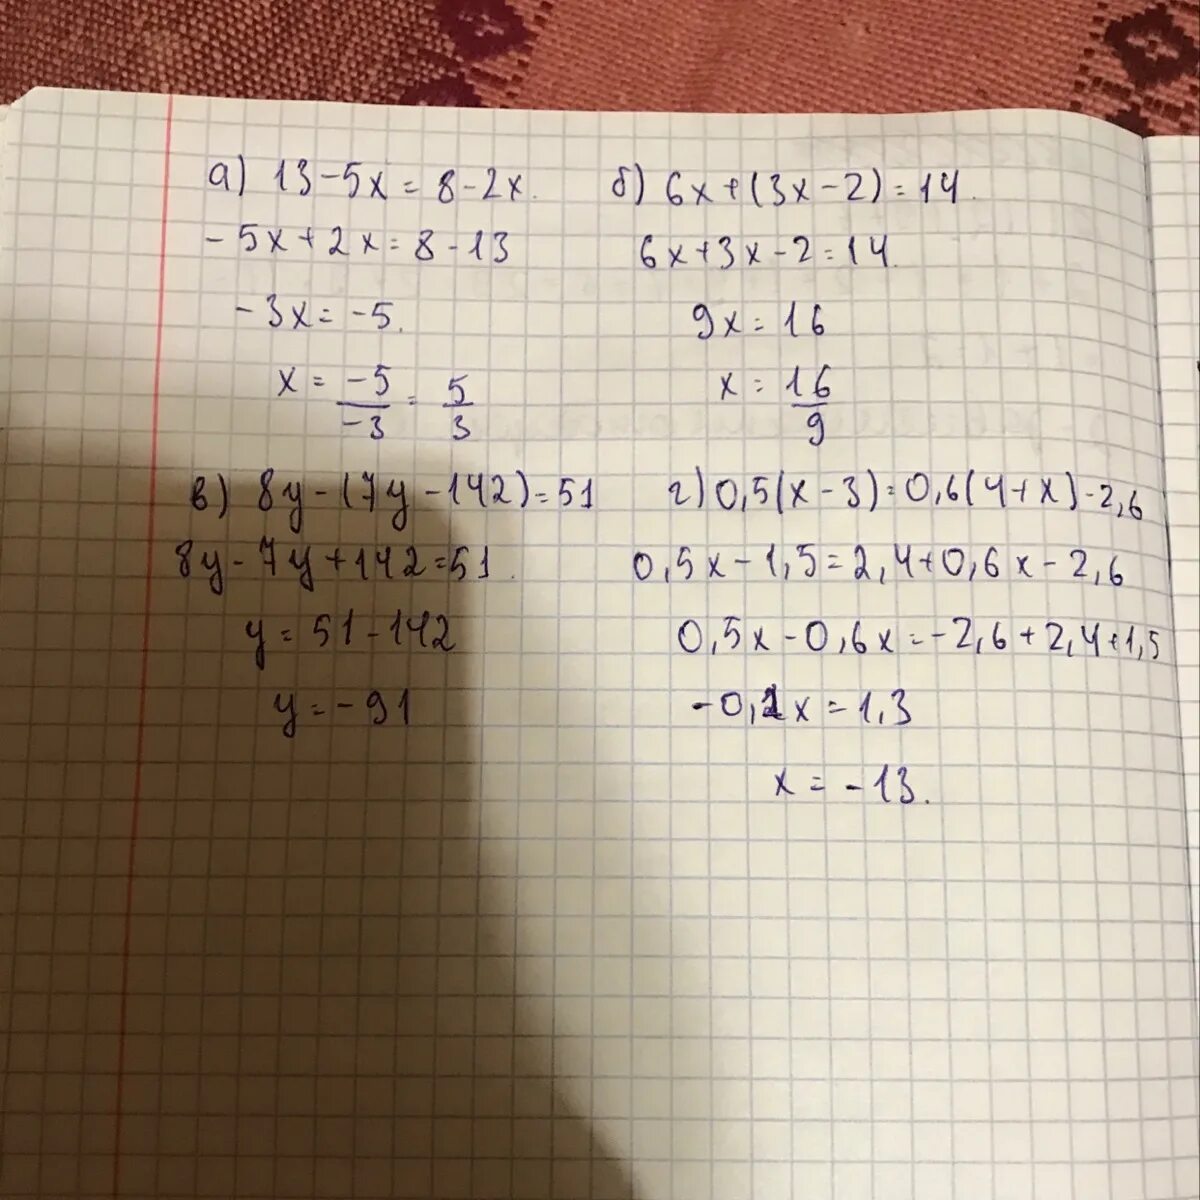 8х-(7х-142)=51. Решение уравнения x+2x+6x+(6x-13)=77. Решить уравнение:x+(-6)=5. 3x+(5x+7)=15 решение.